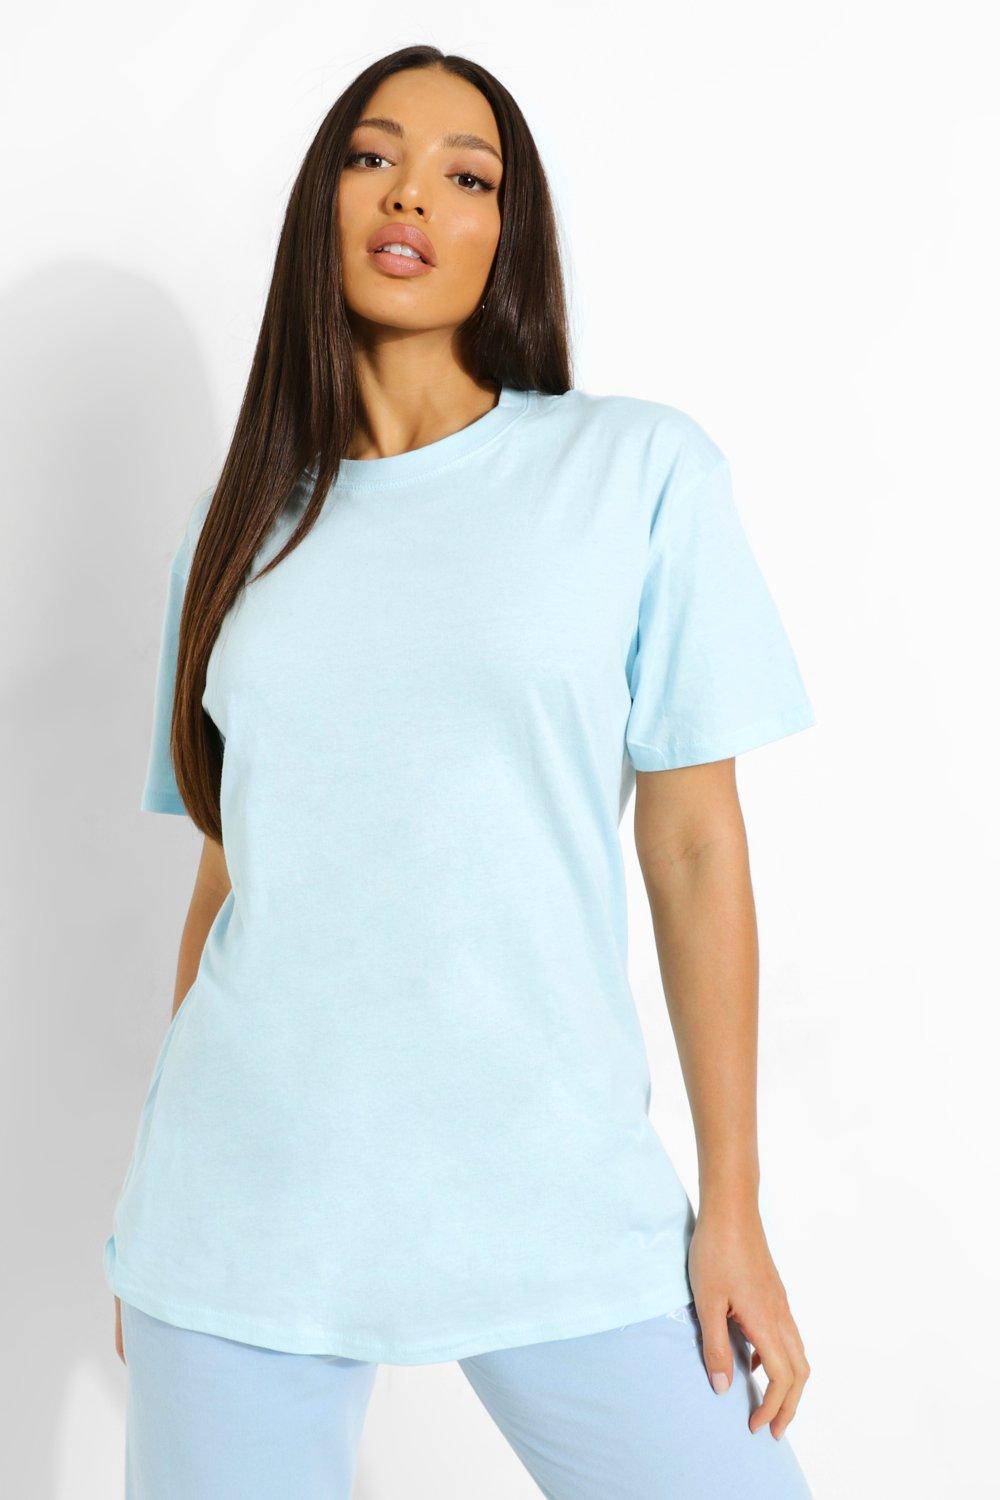 t-shirt uni en coton "tall" - bleu ciel - s, bleu ciel